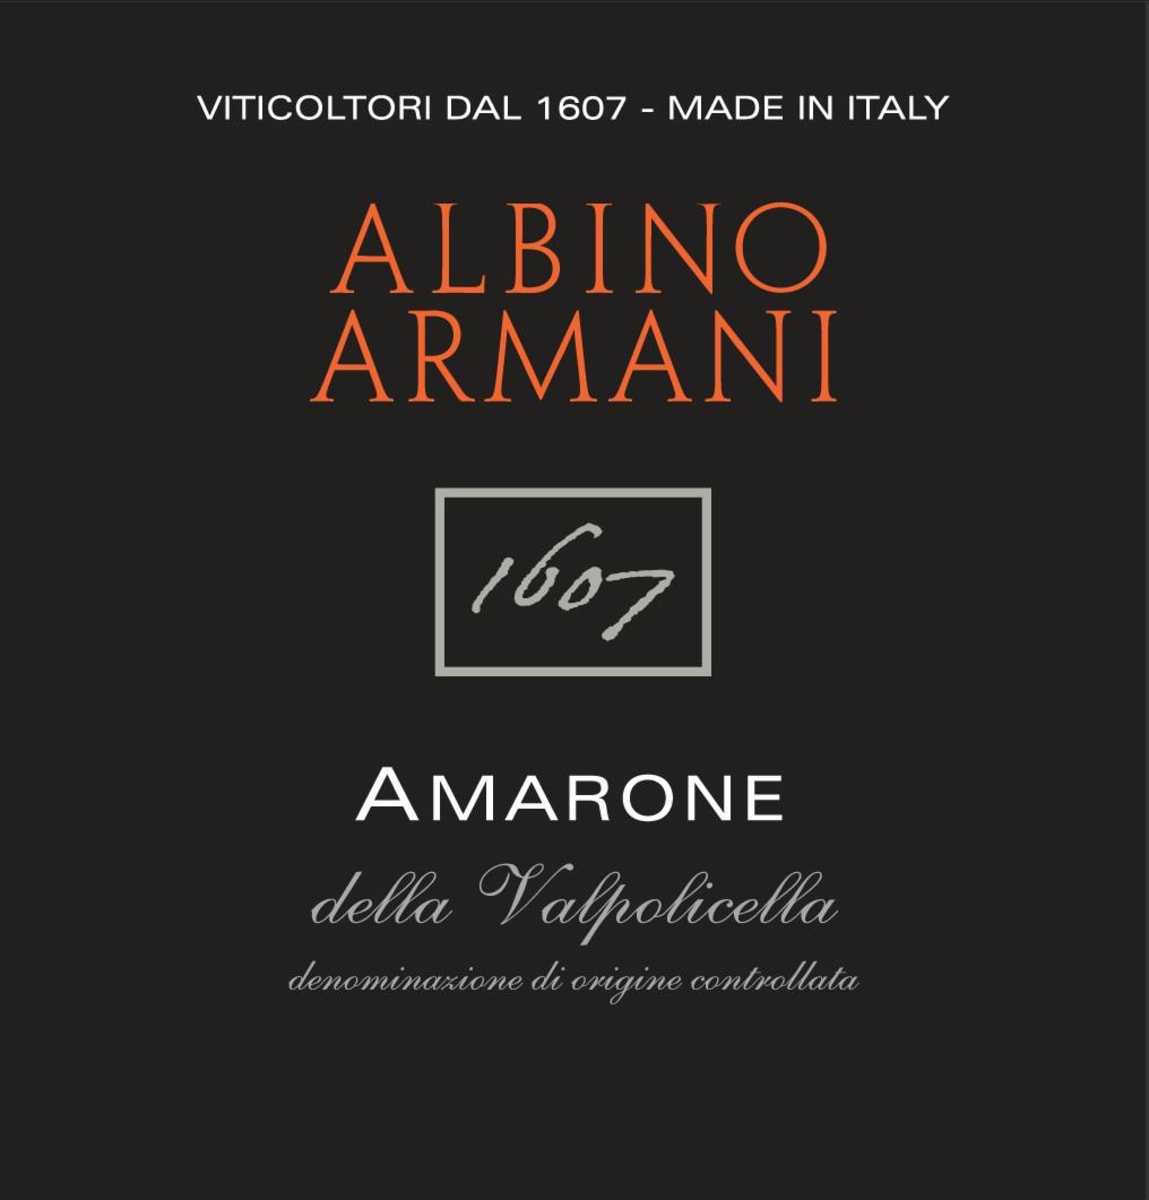 Albino Armani Amarone della Valpolicella 1607 2010 Front Label